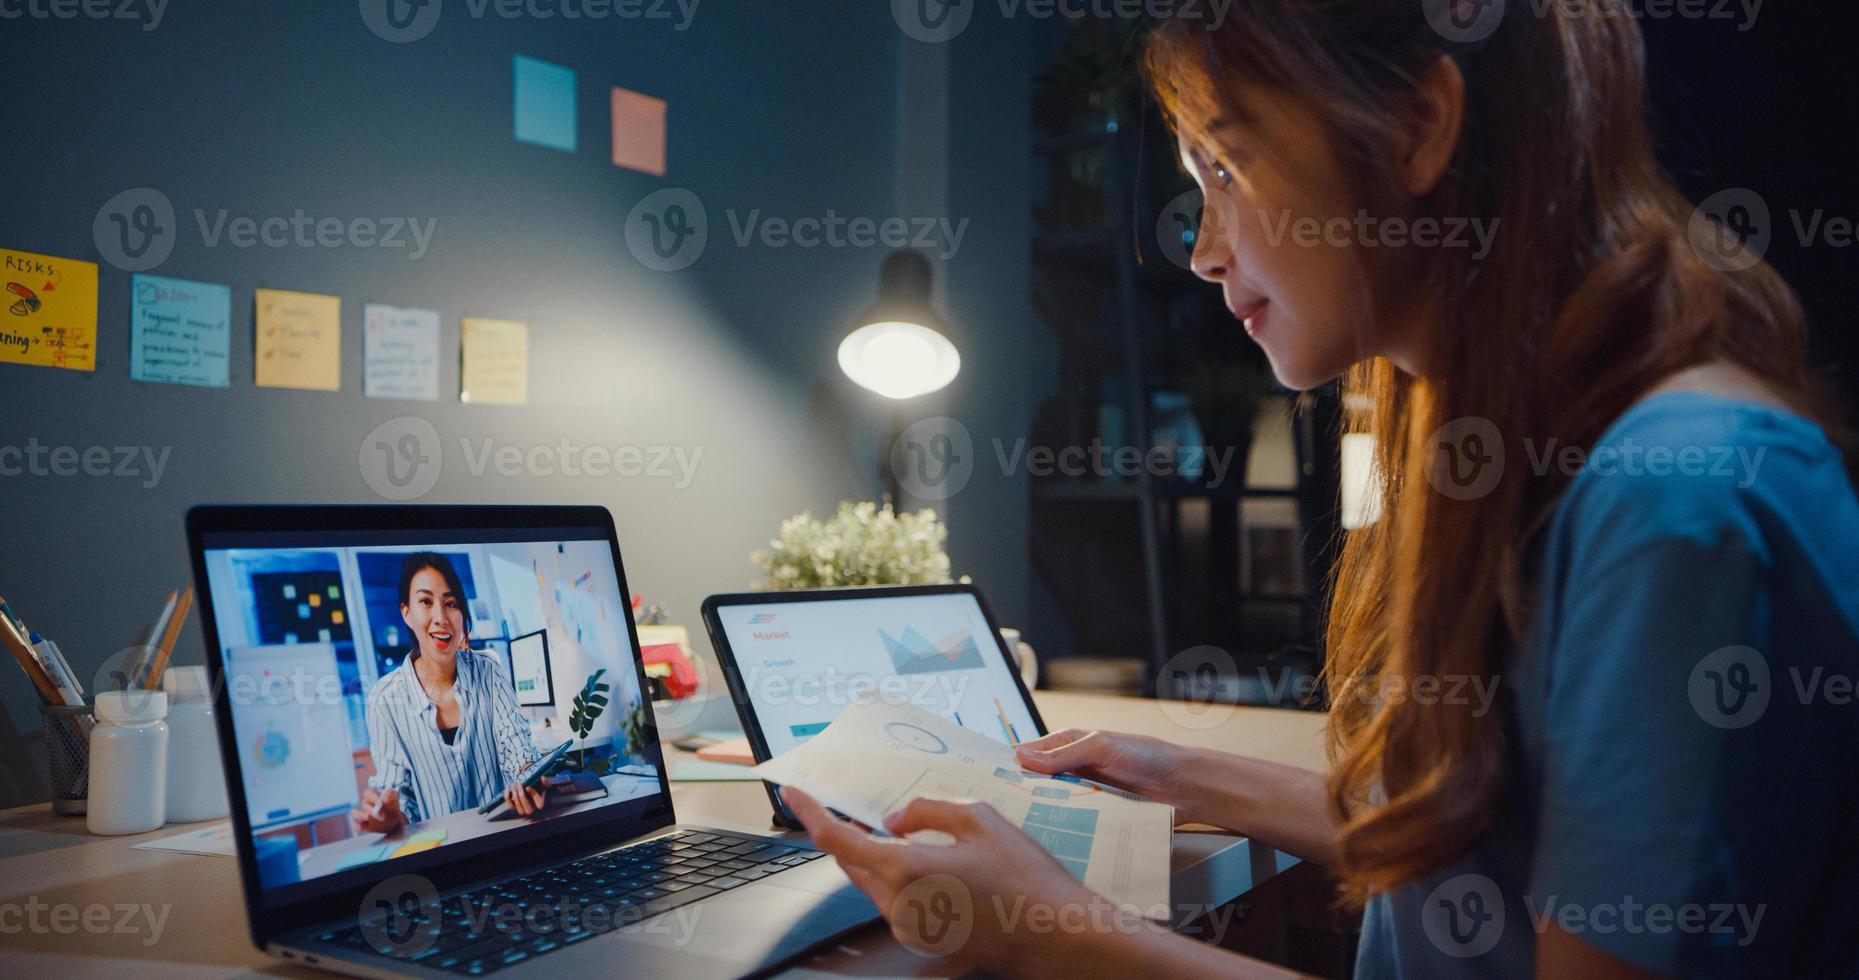 asiatisk kvinna som använder bärbar dator prata med kollegor om arbete i videosamtal medan hon arbetar hemma i vardagsrummet på natten. självisolering, social distansering, karantän för förebyggande av coronavirus. foto